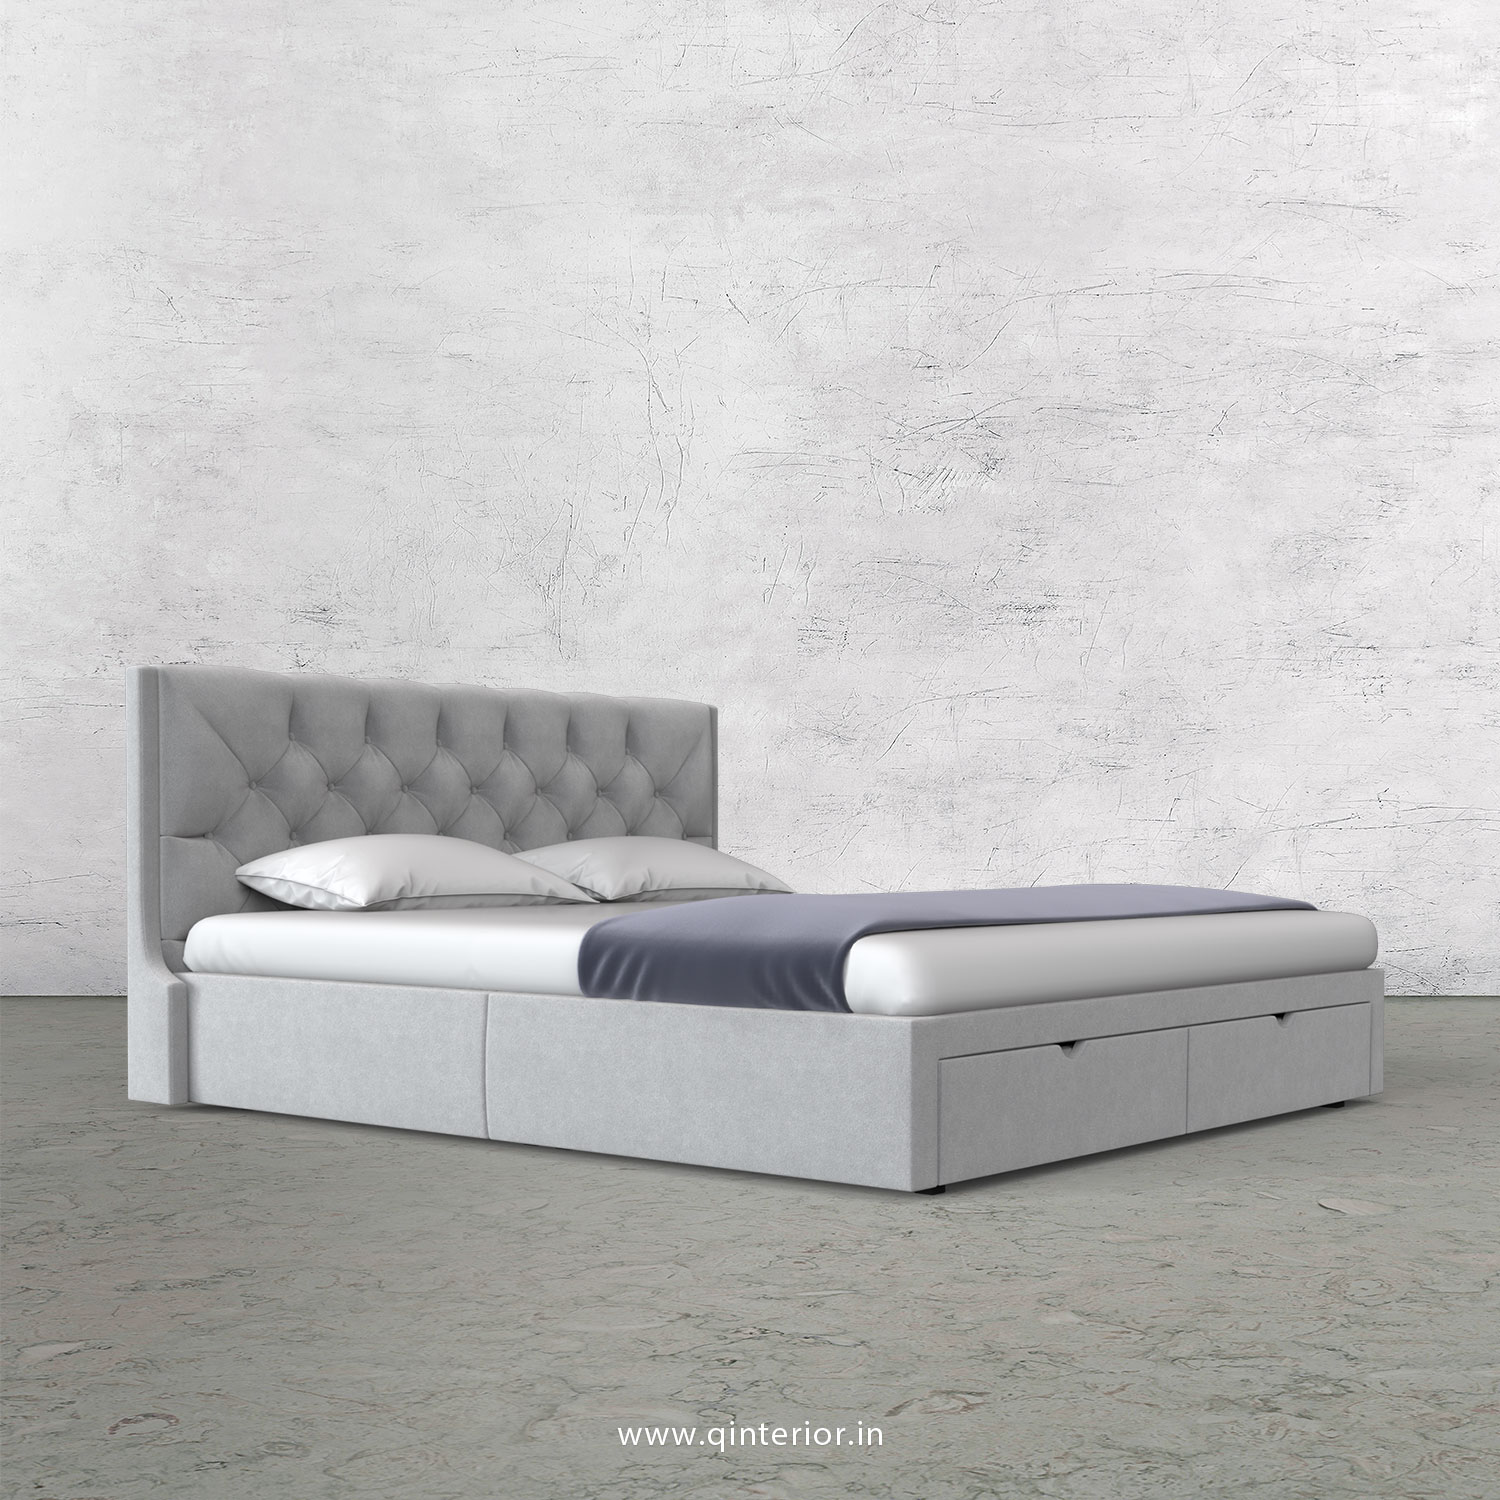 Scorpius Queen Storage Bed in Velvet Fabric - QBD001 VL06